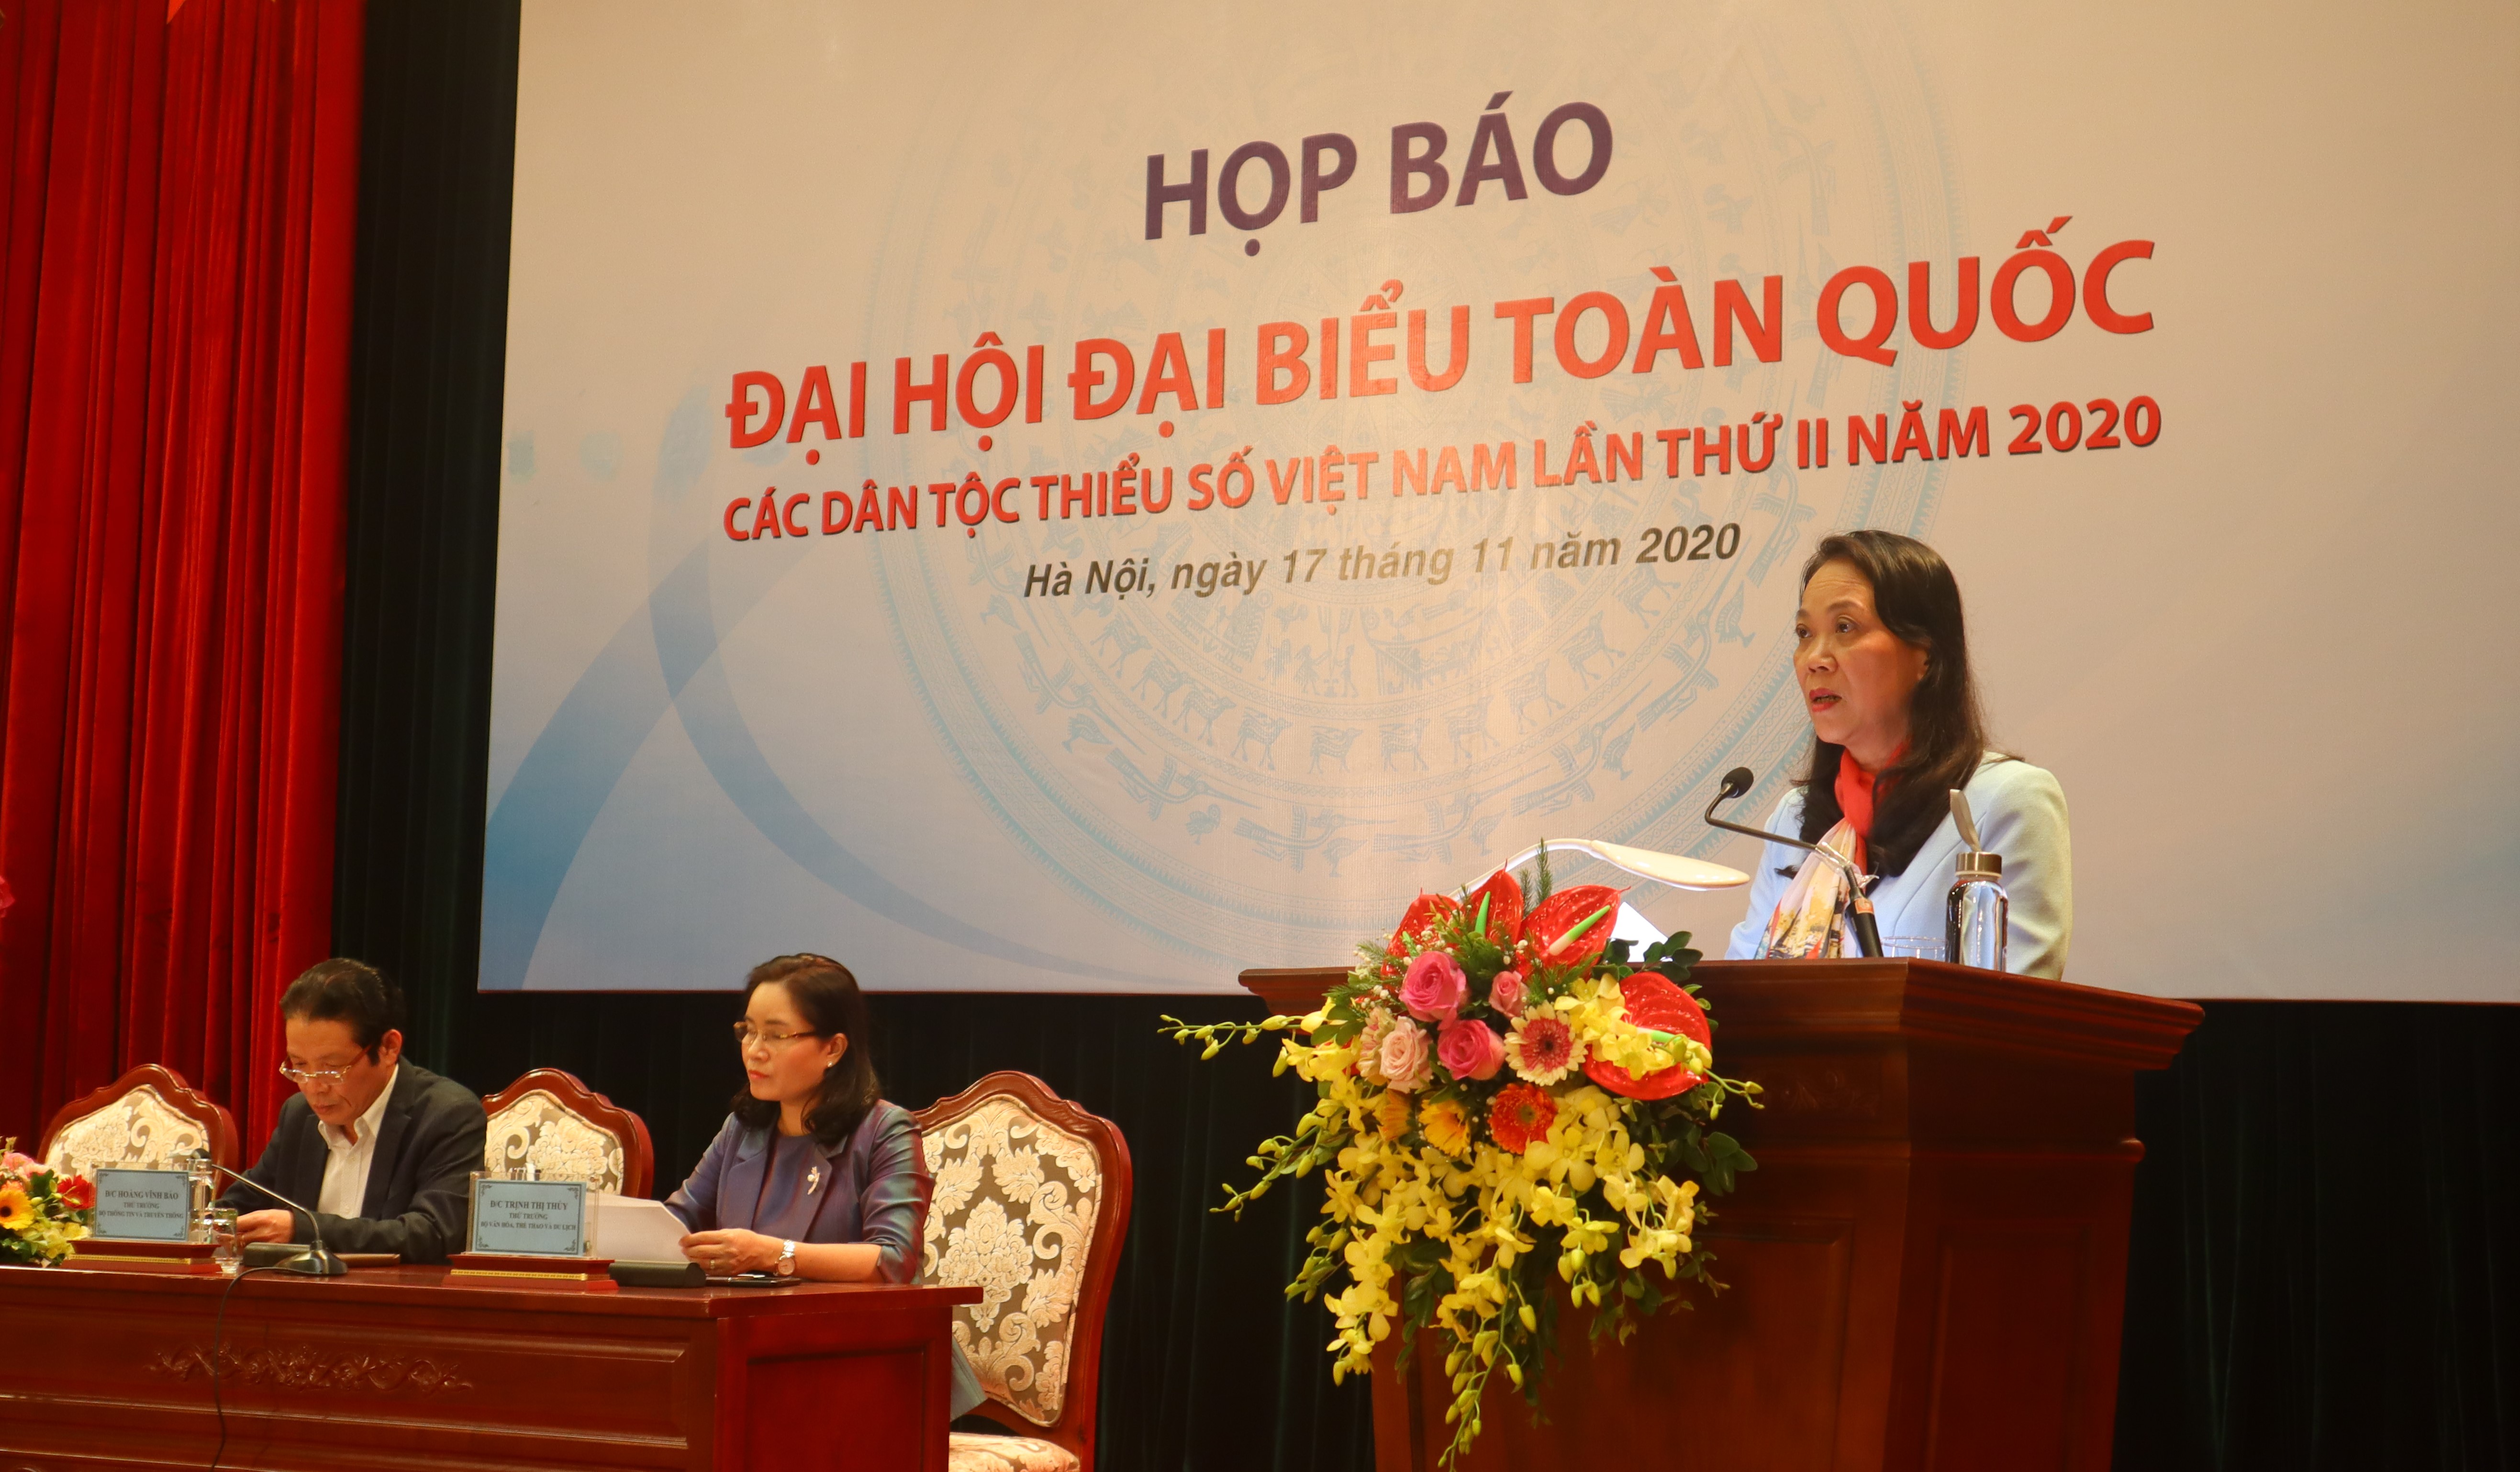 Thứ trưởng, Phó Chủ nhiệm UBDT Hoàng Thị Hạnh phát biểu tại buổi họp báo